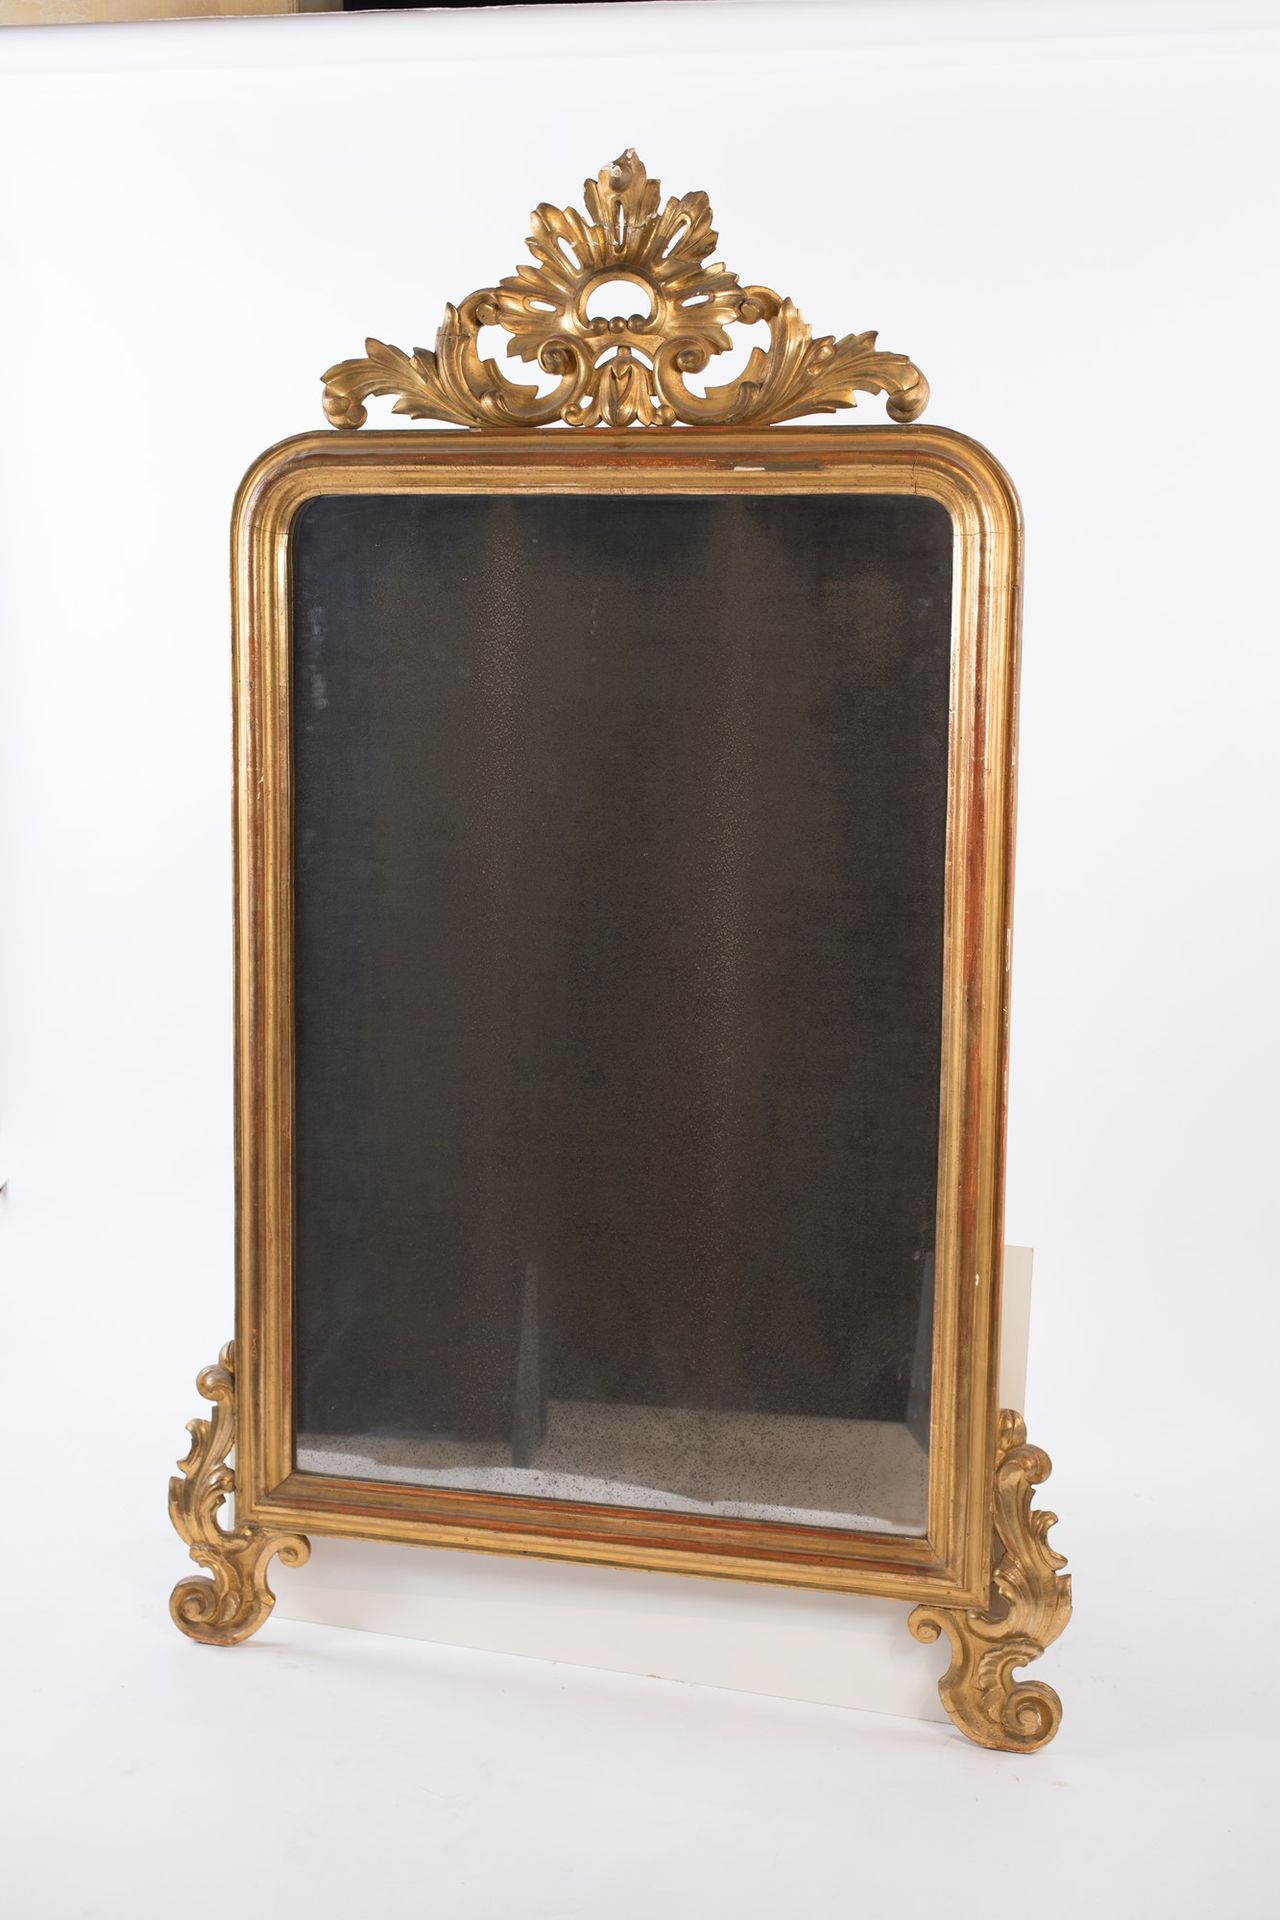 Napoleon III period gilded wood mirror con marco moldeado en madera dorada soste&hellip;